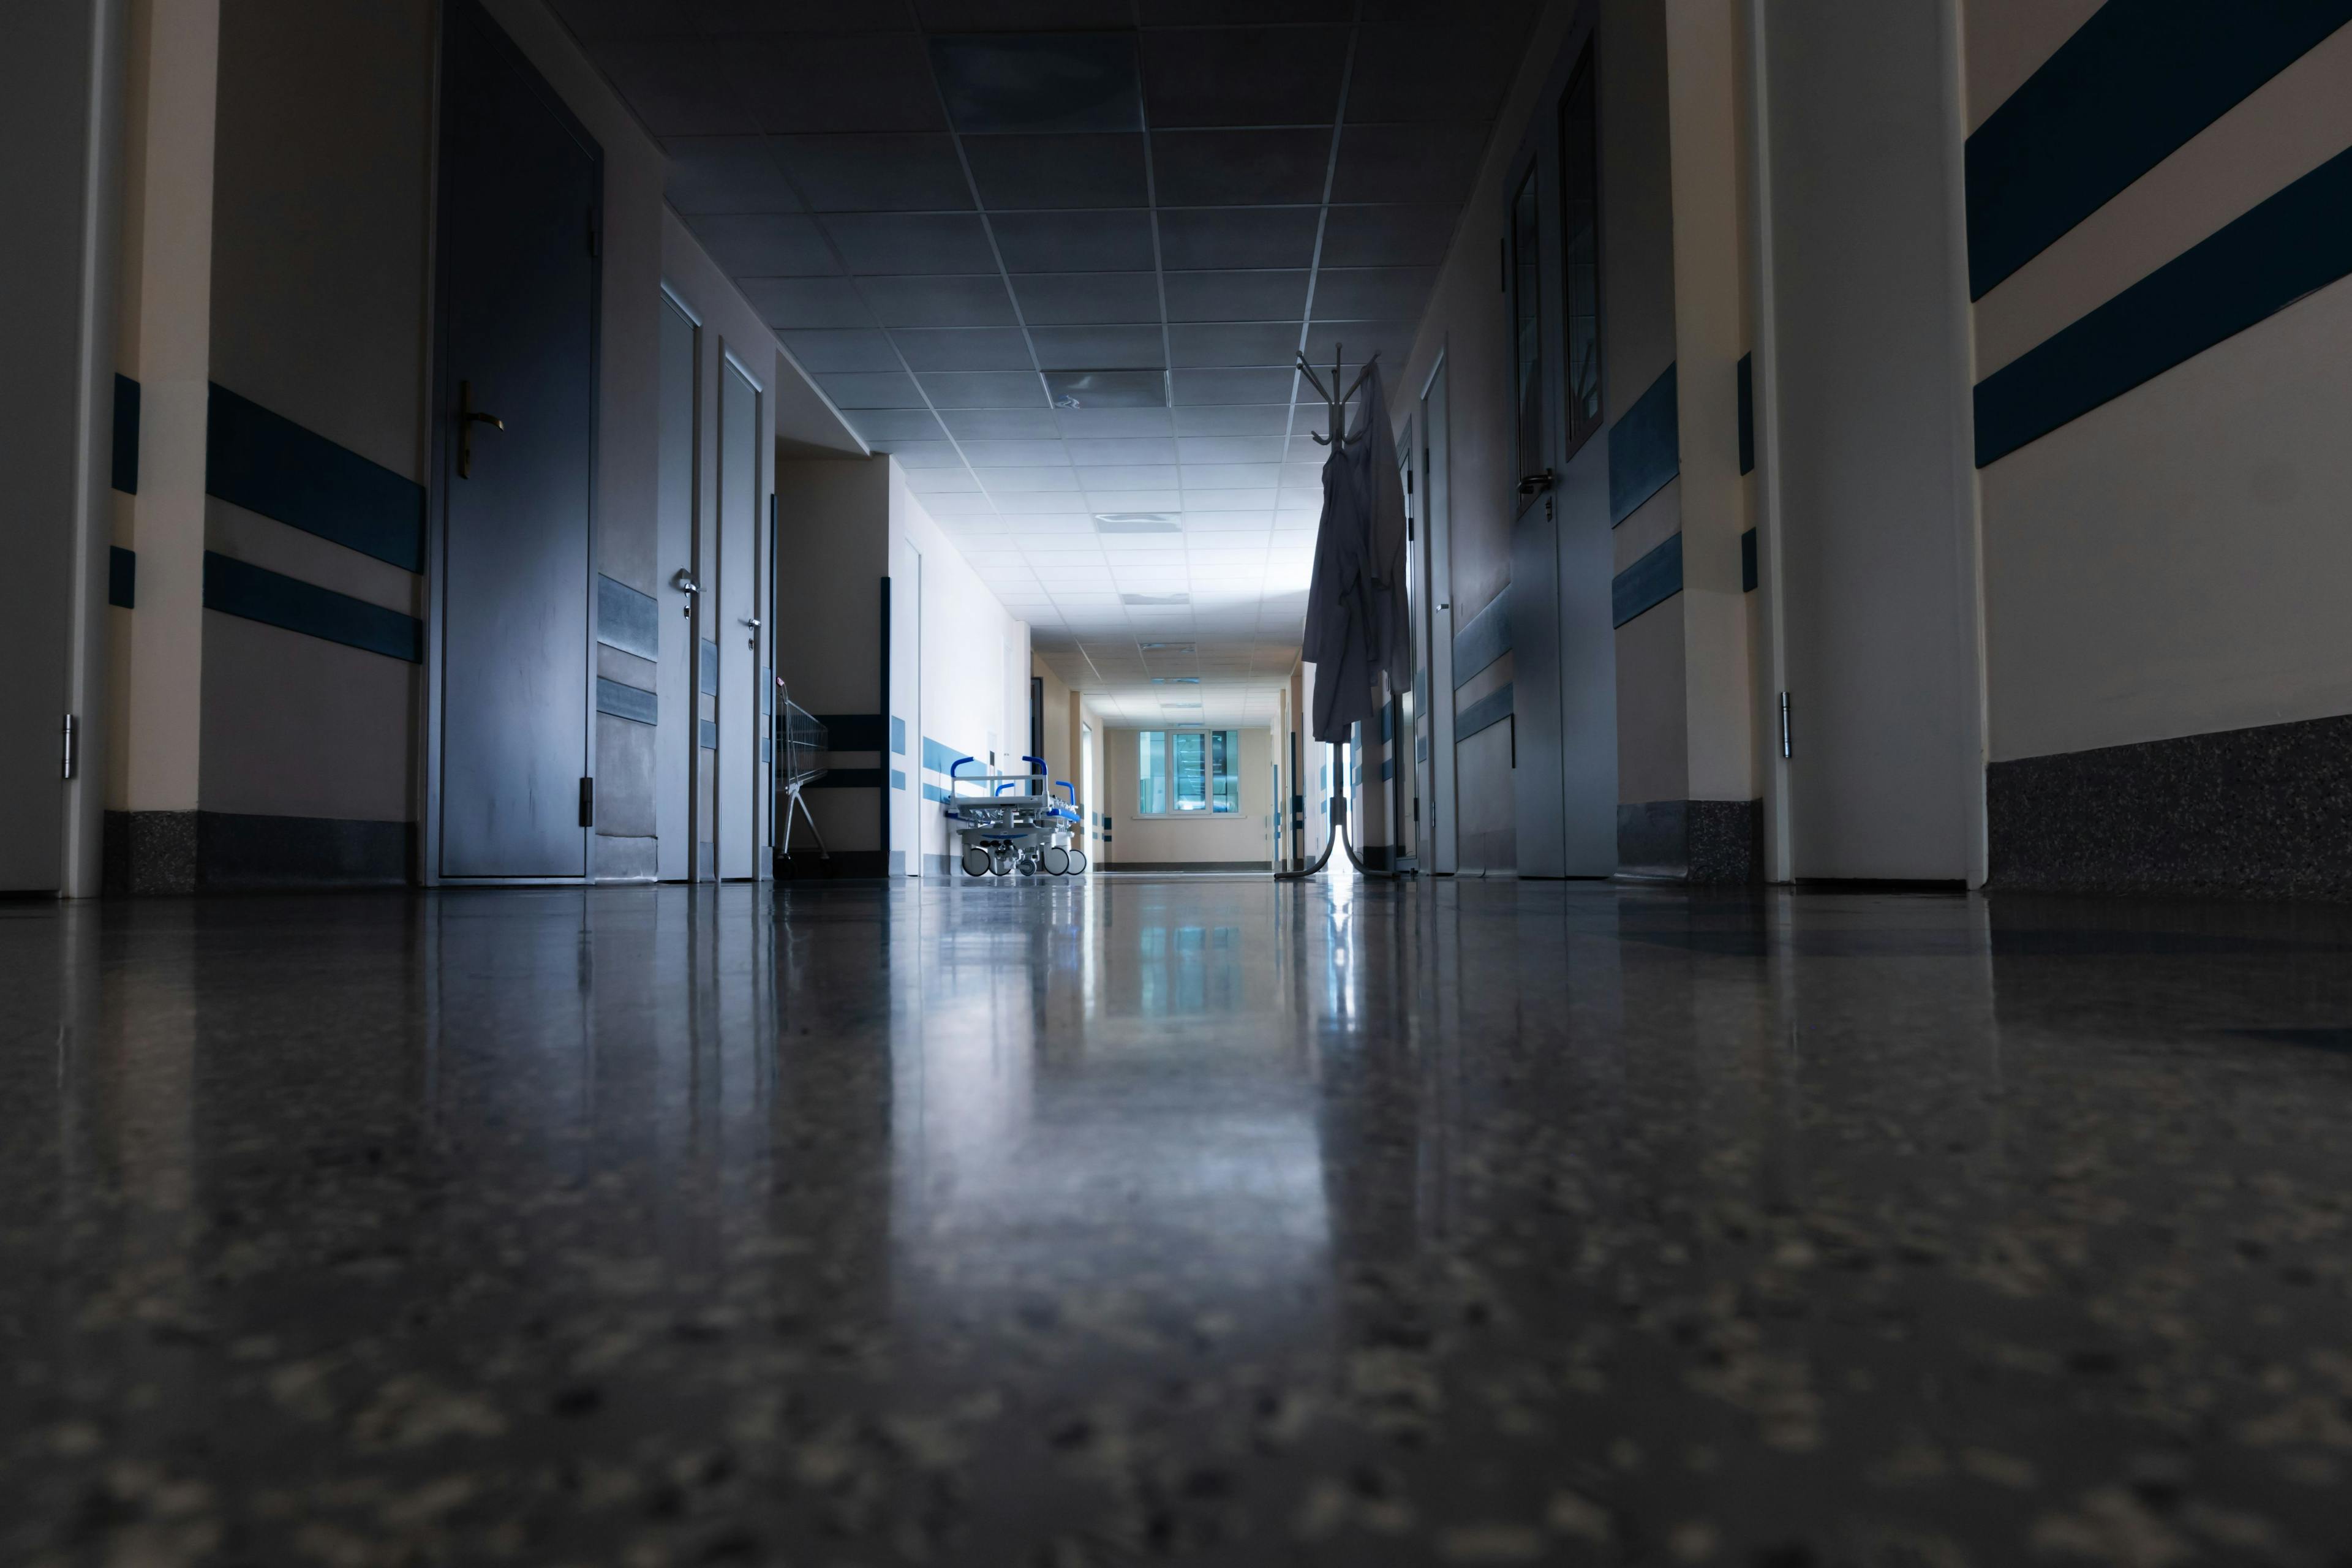 A California hospital closes its doors: ‘A great loss’